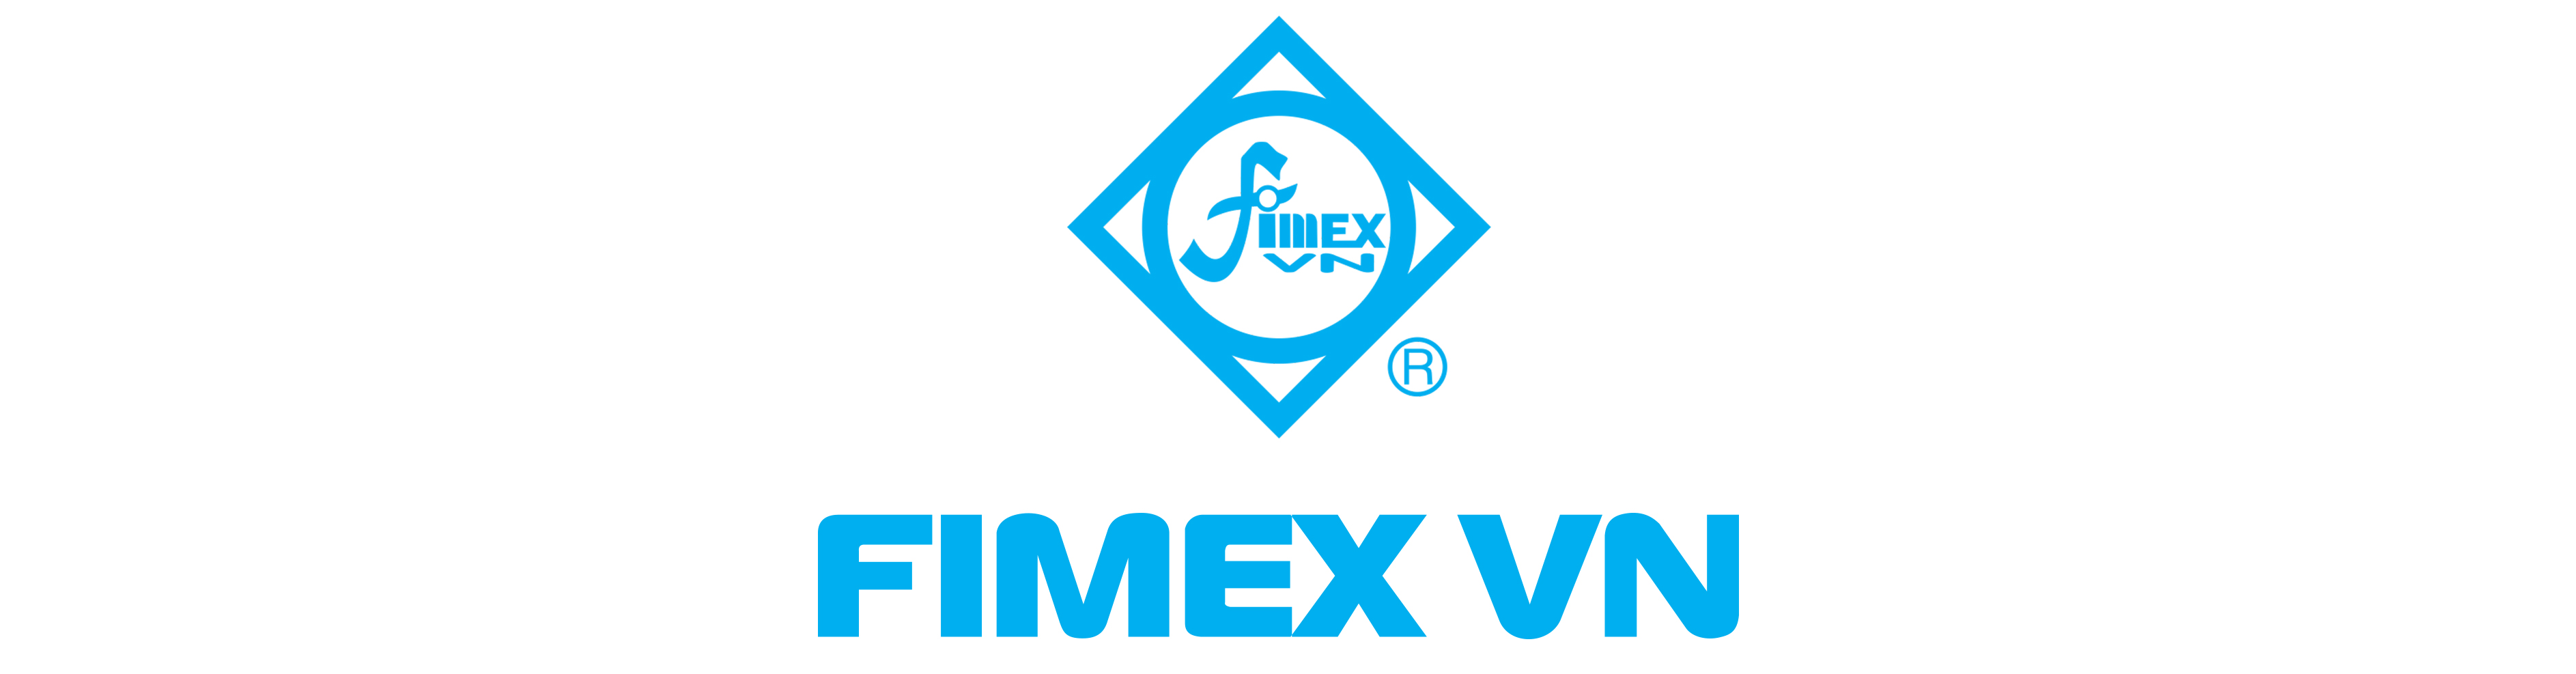 logo-text-fimexvn